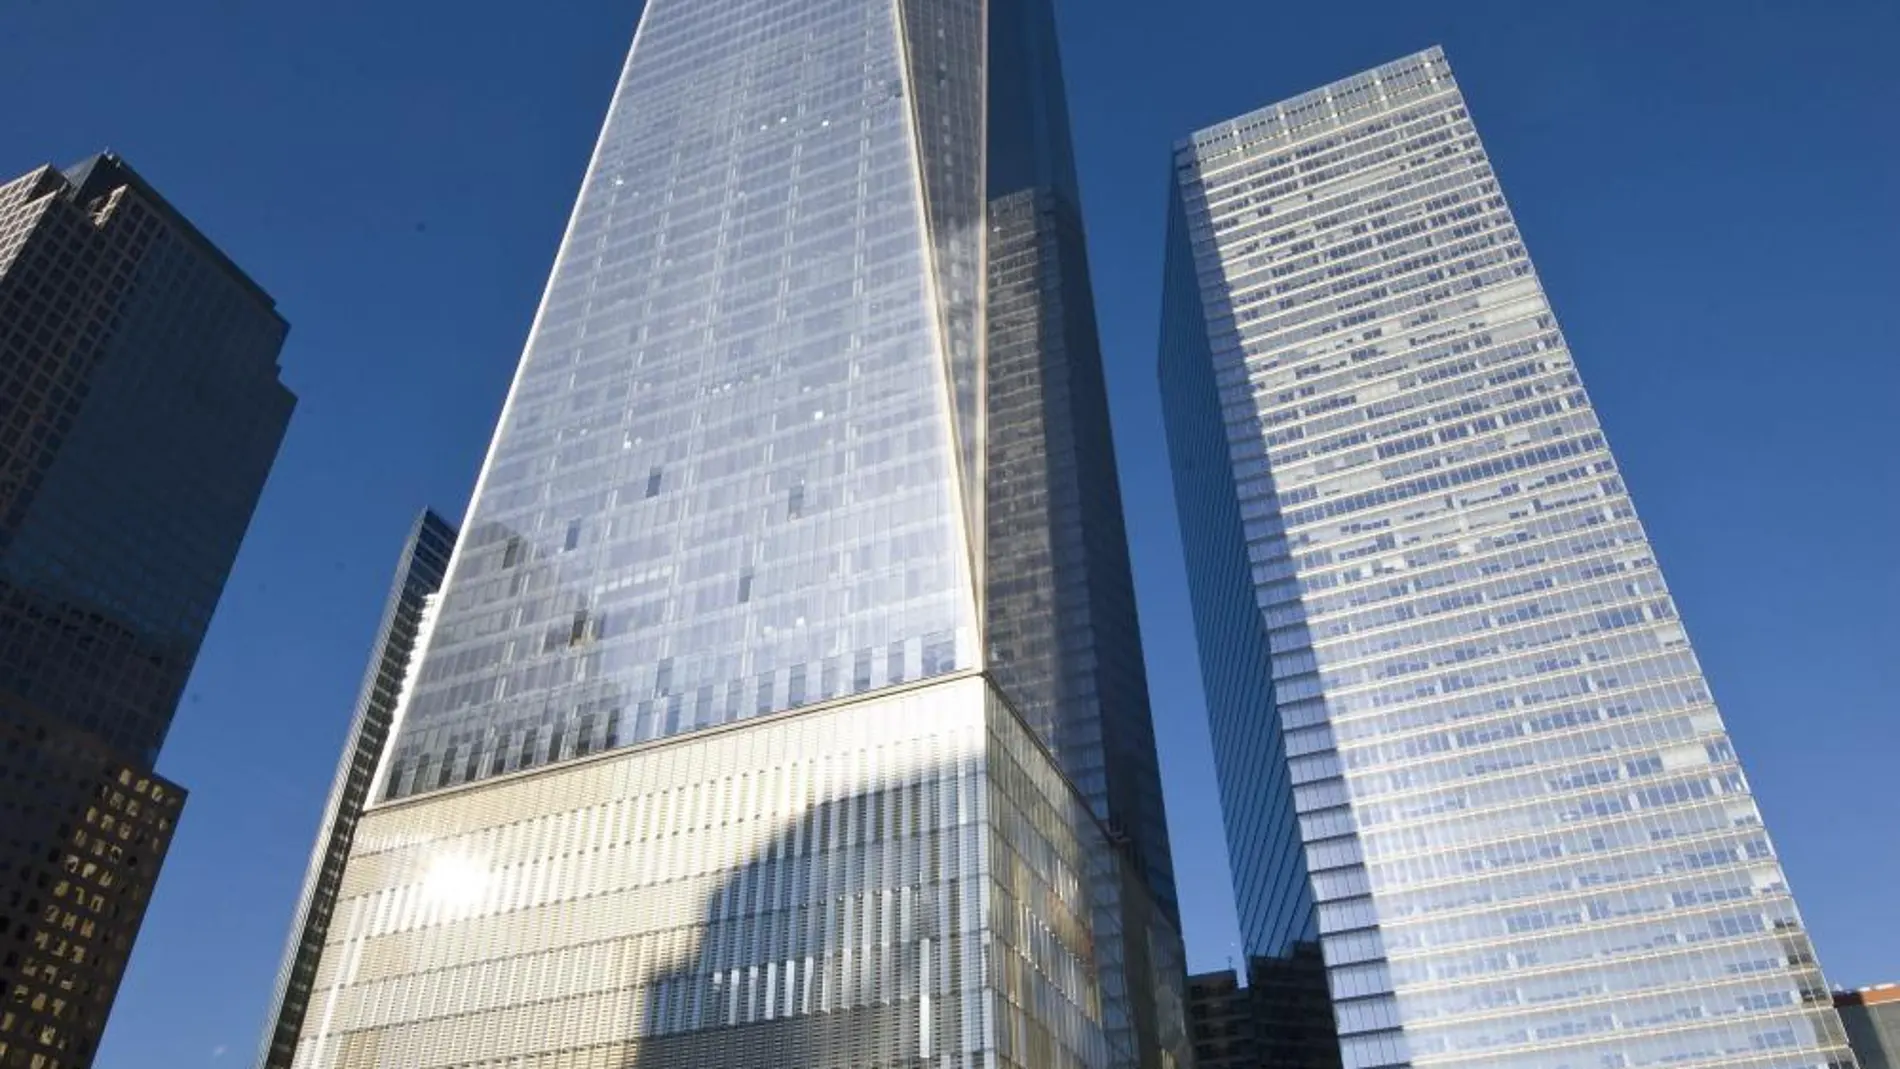 Vista de un parte del memorial del 11 de Septiembre junto al One World Trade Center (c) en Nueva York (EE.UU.).